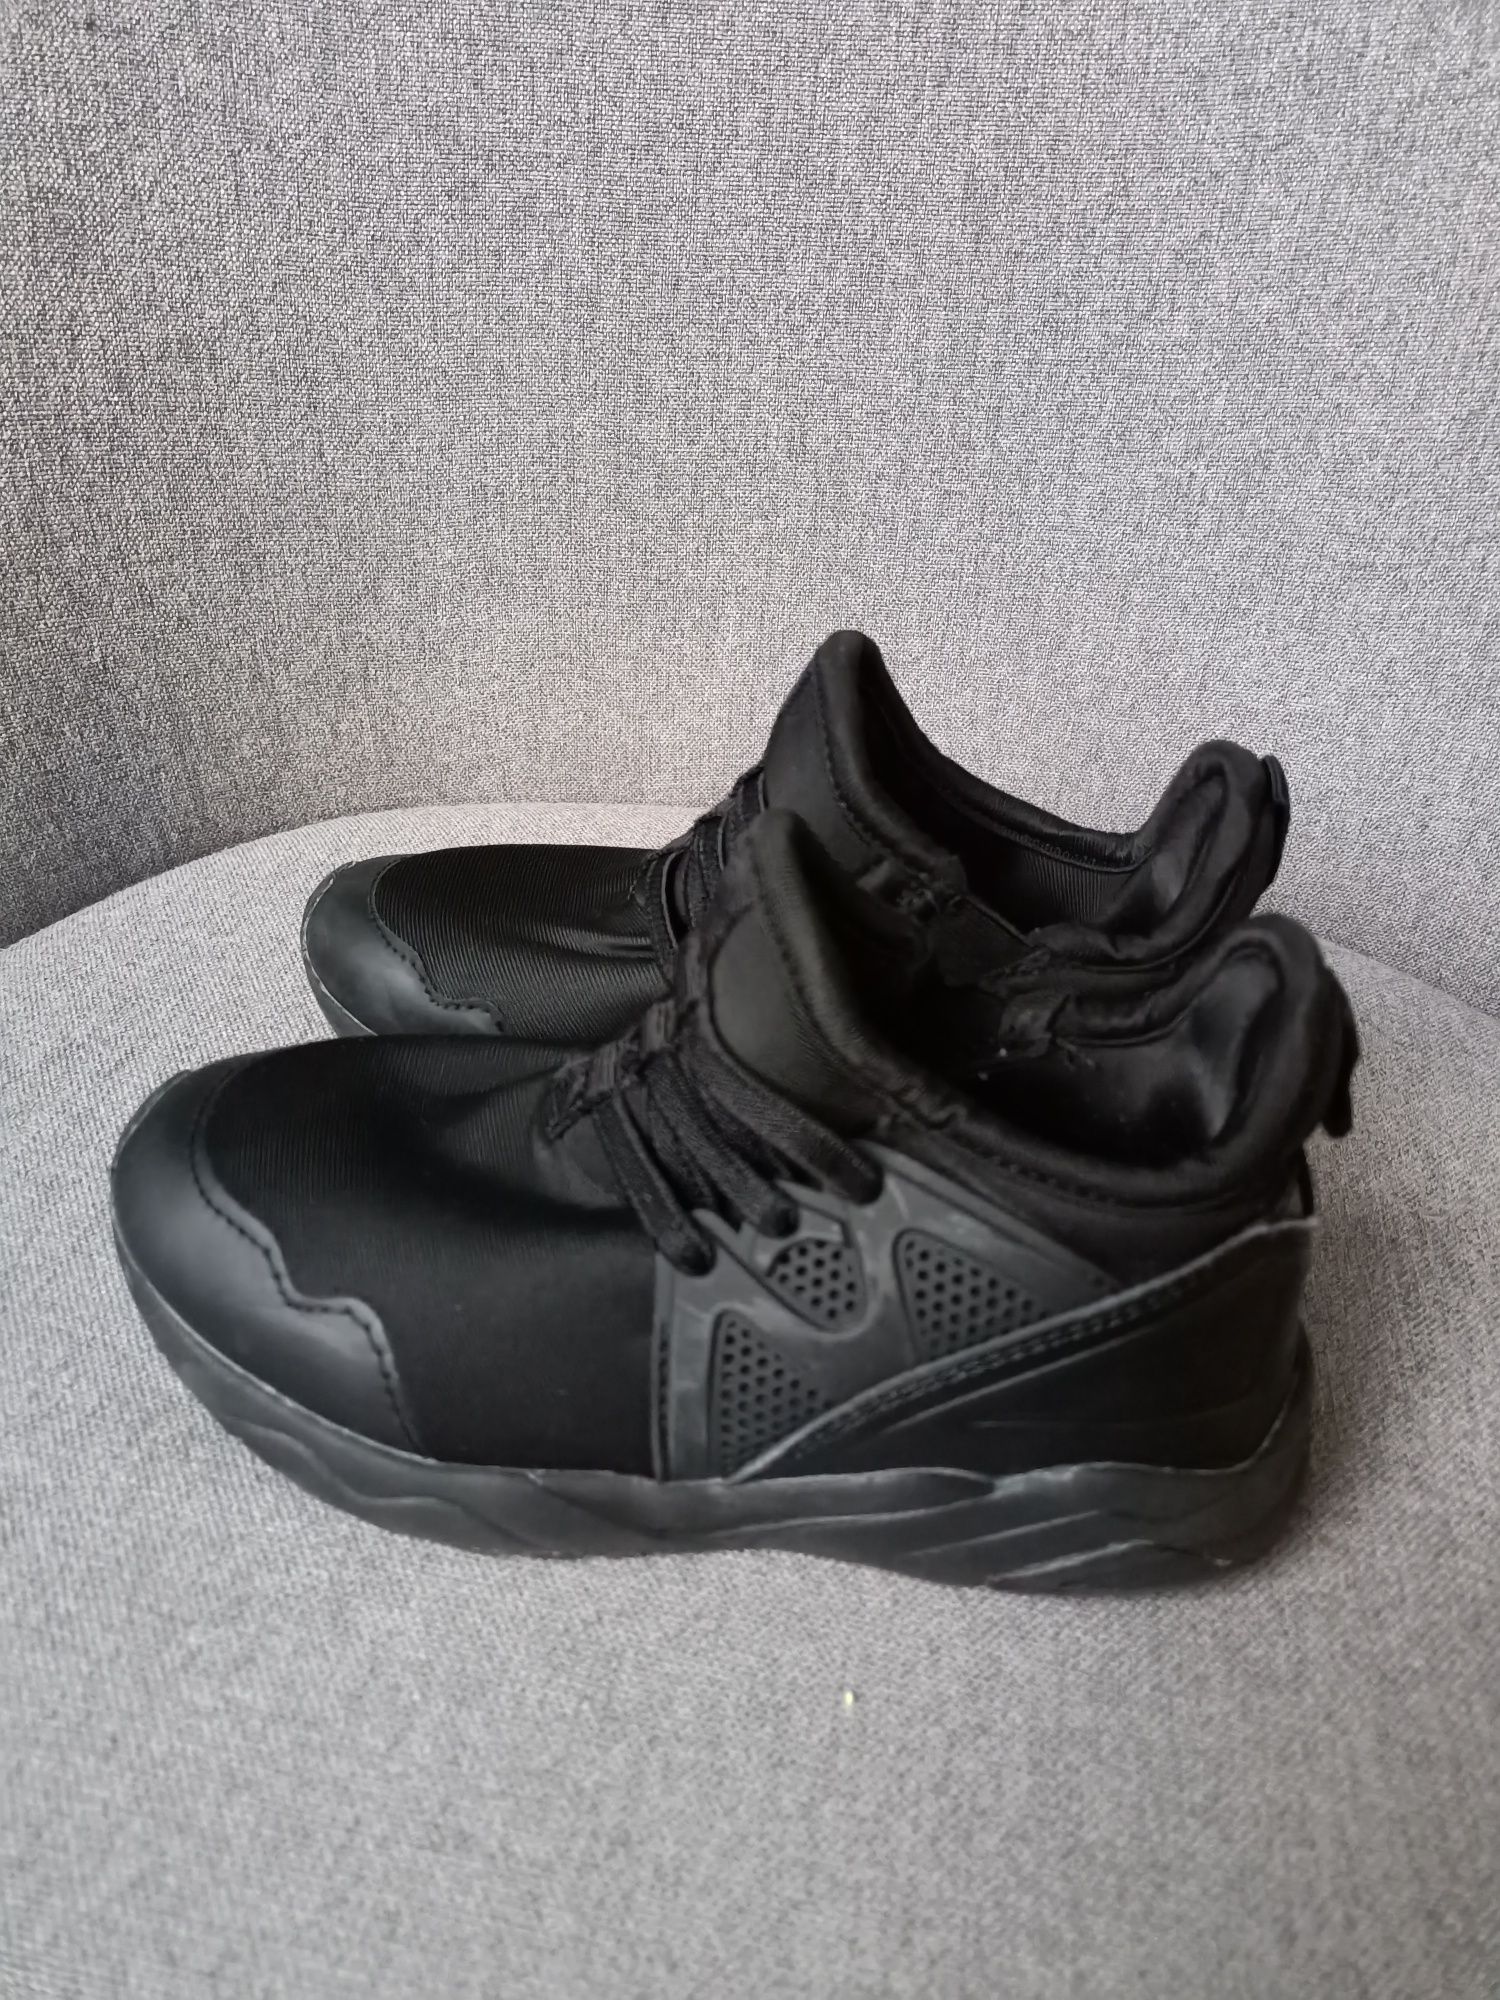 Czarne buty lekkie sportowe wsuwane Next 28/17cm